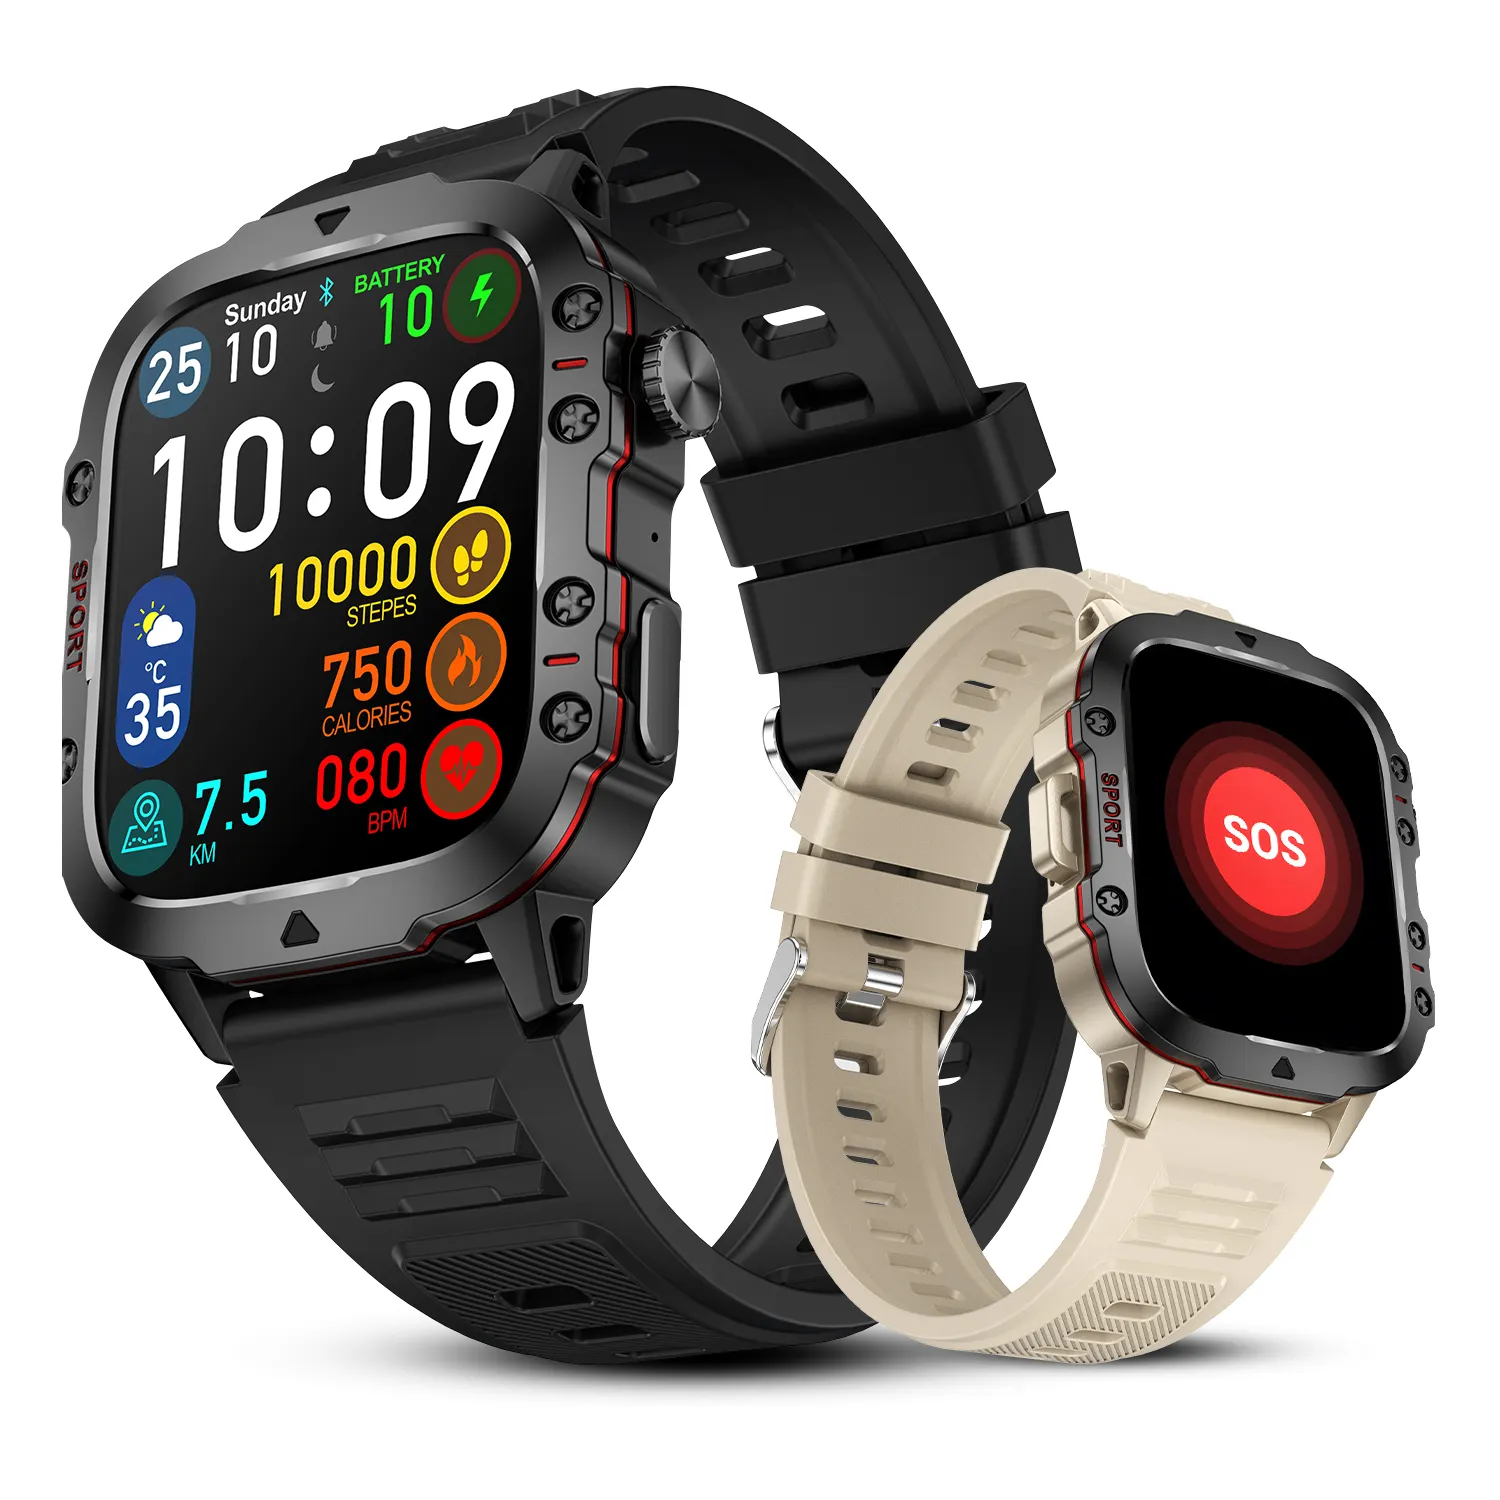 Erkekler açık 3ATM Smartwatch SOS 420mAh pil sağlık monitör spor giyilebilir cihazlar için fitnes aktivite takip cihazı itme hatırlatma